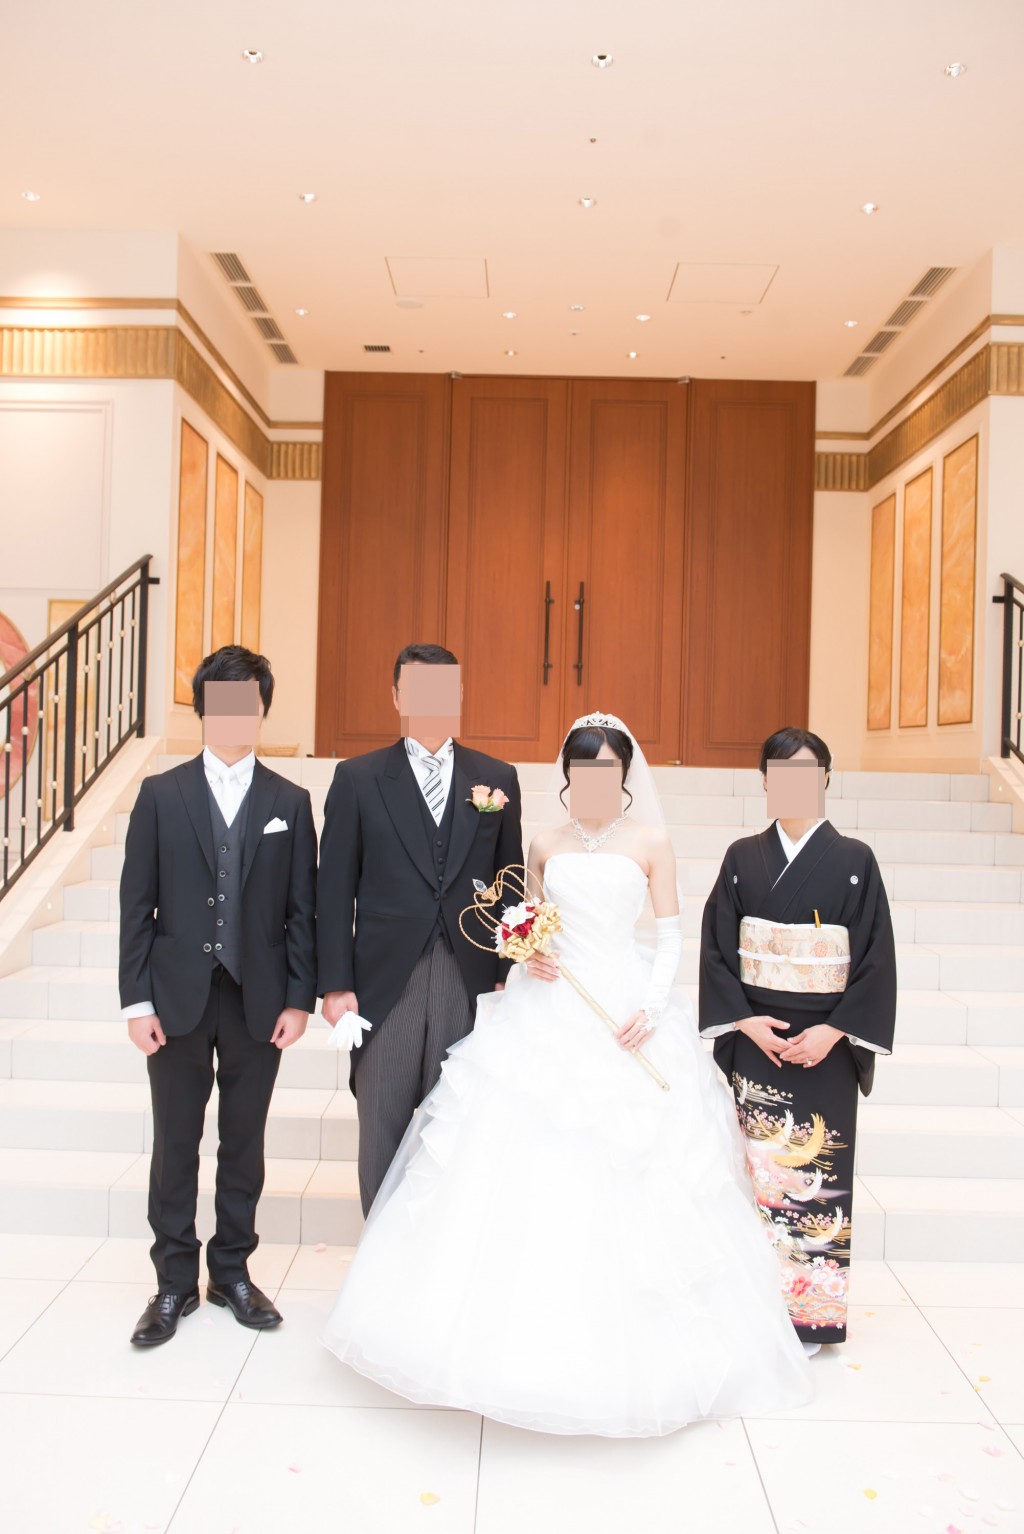 アニヴェルセルみなとみらい横浜 結婚式レポブログ アフターセレモニーでの全員集合写真撮影、新郎新婦当日写真撮影